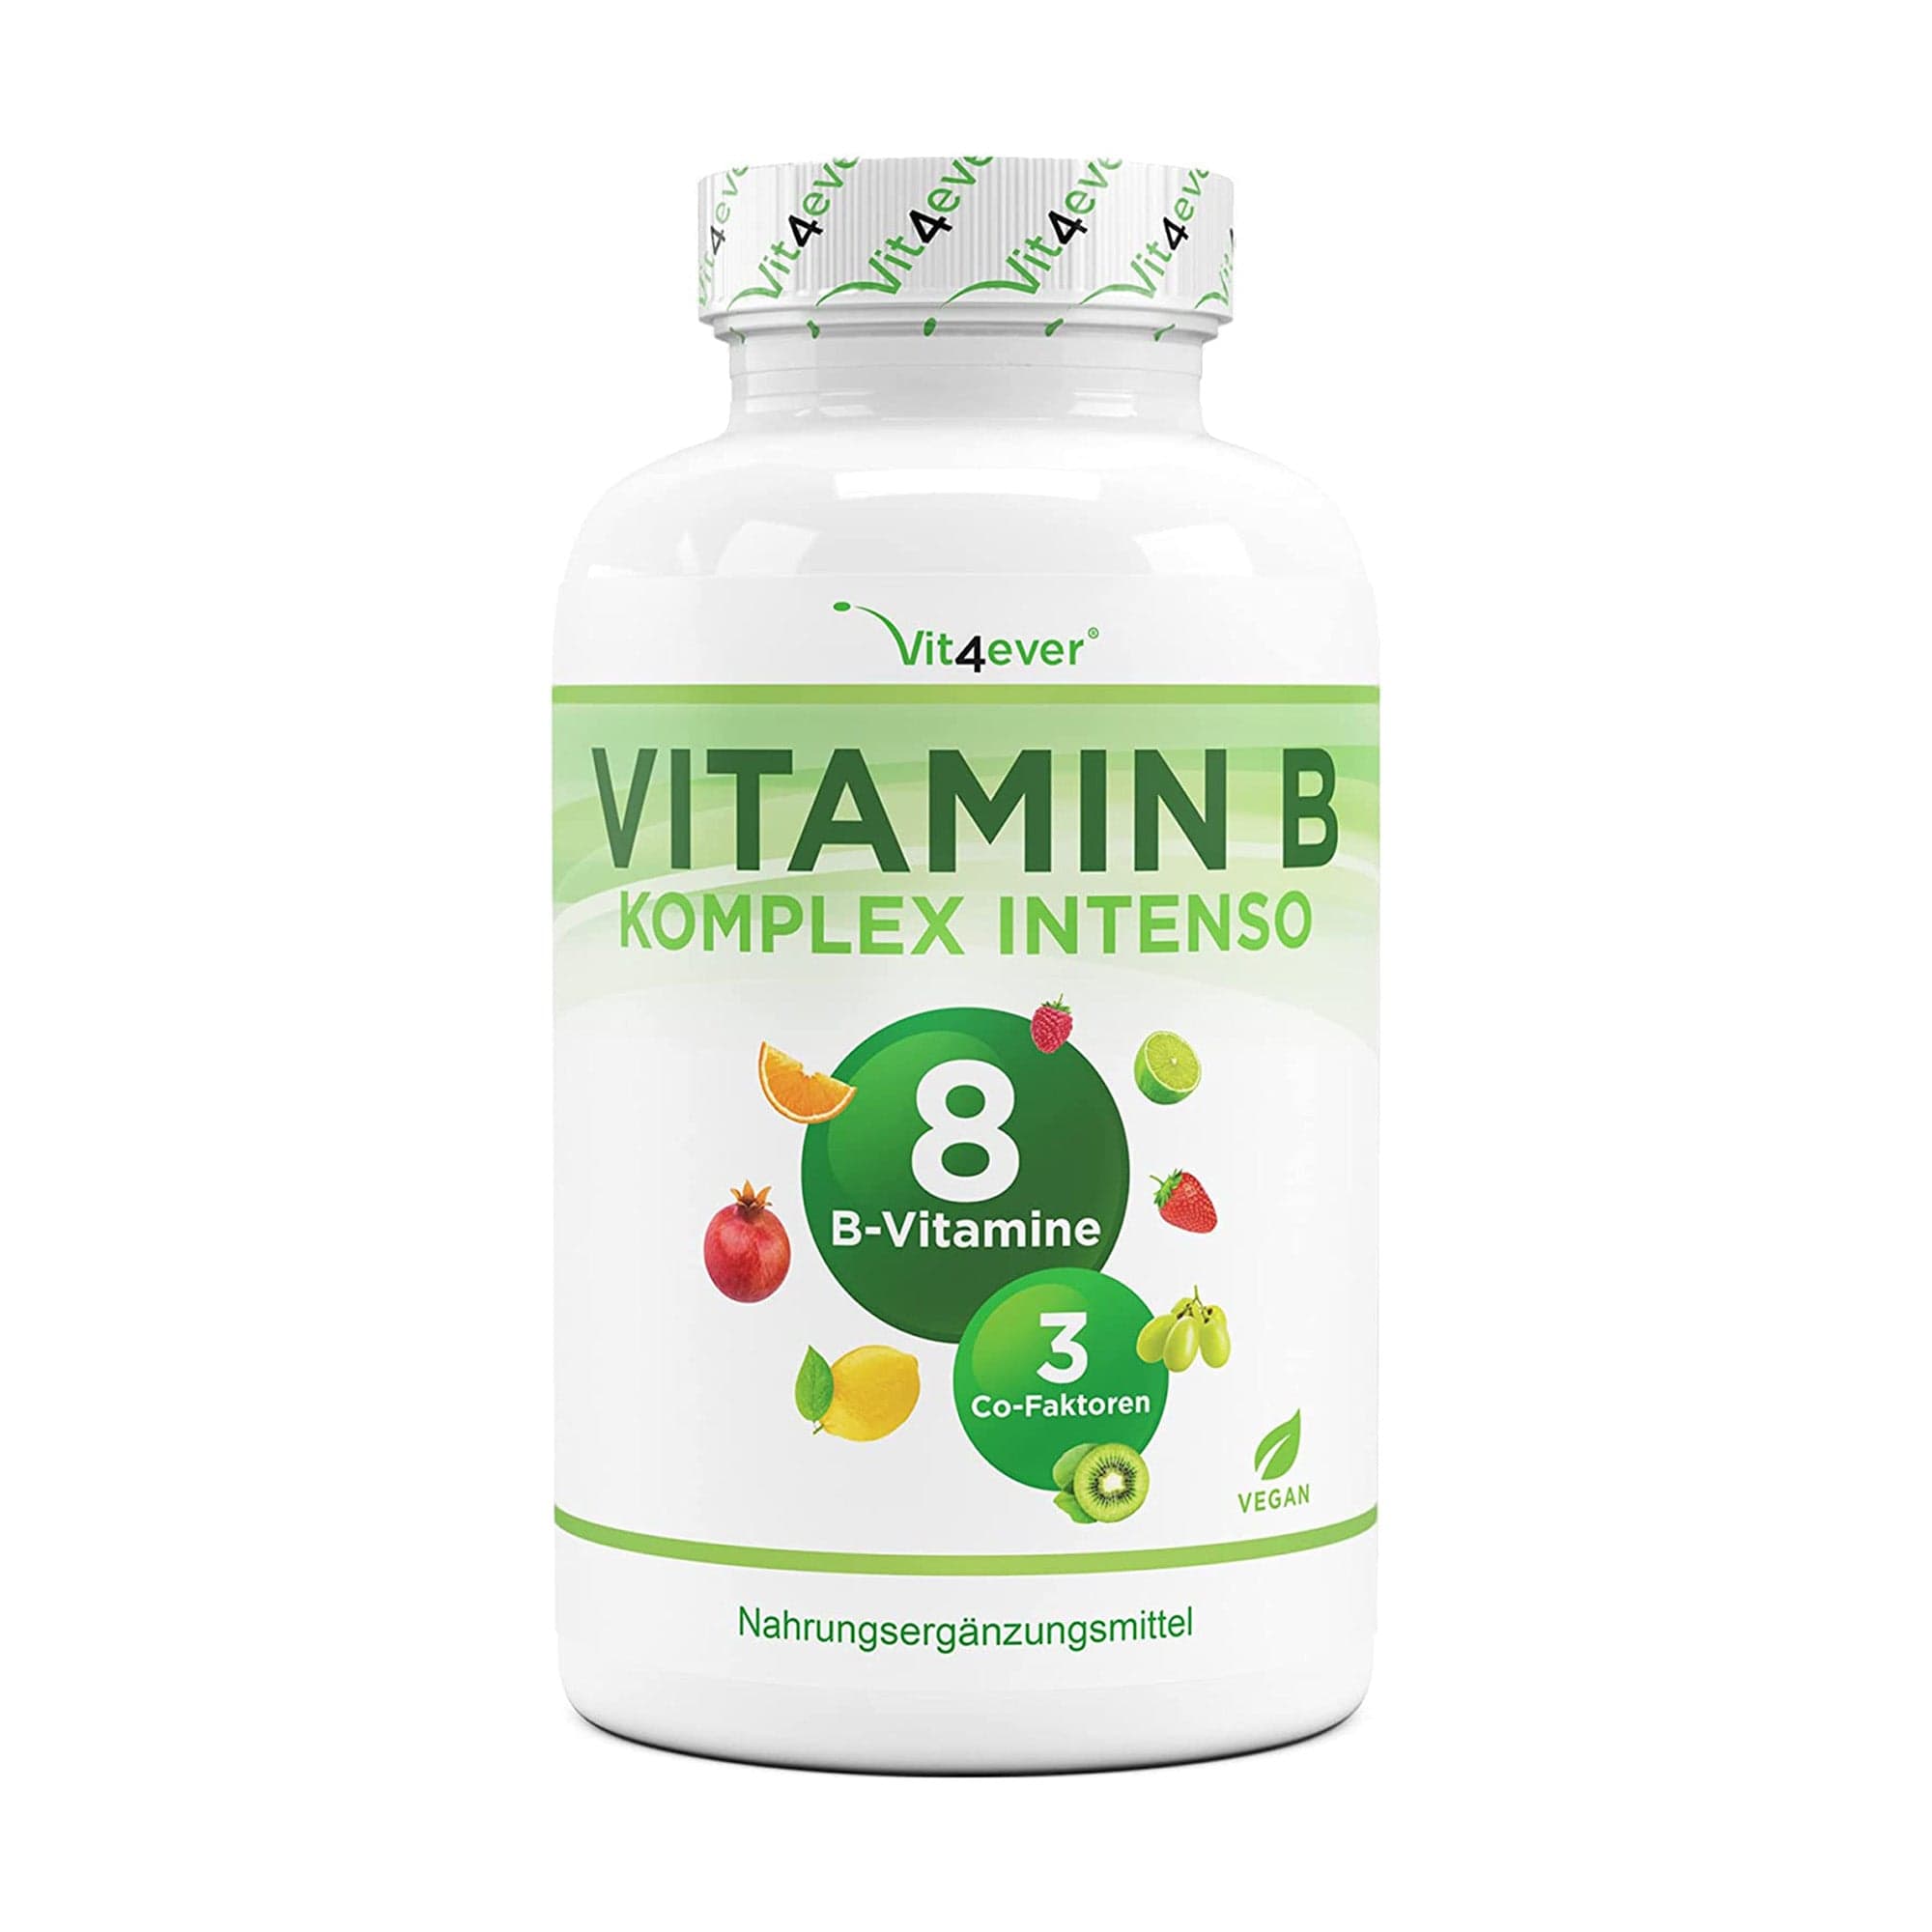 Vitamine B-complex Intenso - 180 capsules (6 maanden) - Premium: Met bio-actieve vitamine B-vormen + co-factoren - Tot 10 keer hogere dosering dan andere vitamine B-complexen - Veganistisch